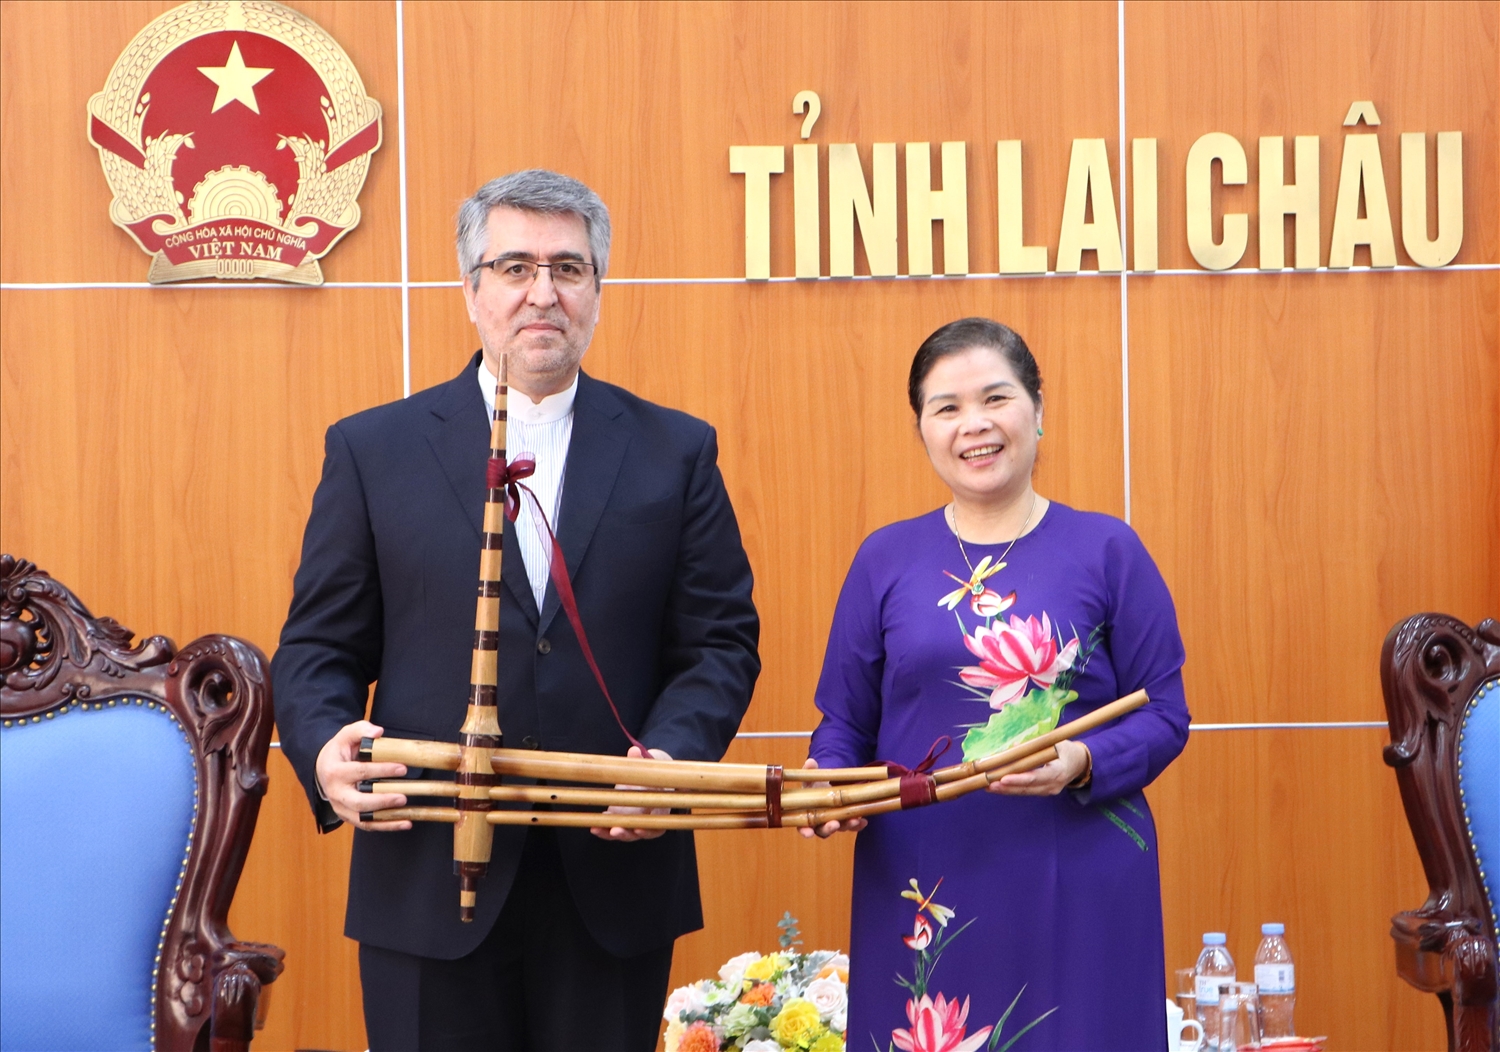 Bí thư Tỉnh ủy Lai Châu Giàng Páo Mỷ tặng Ngài Đại sứ cây khèn Mông - một trong những biểu tượng văn hóa của vùng đất cuối trời Tây Bắc